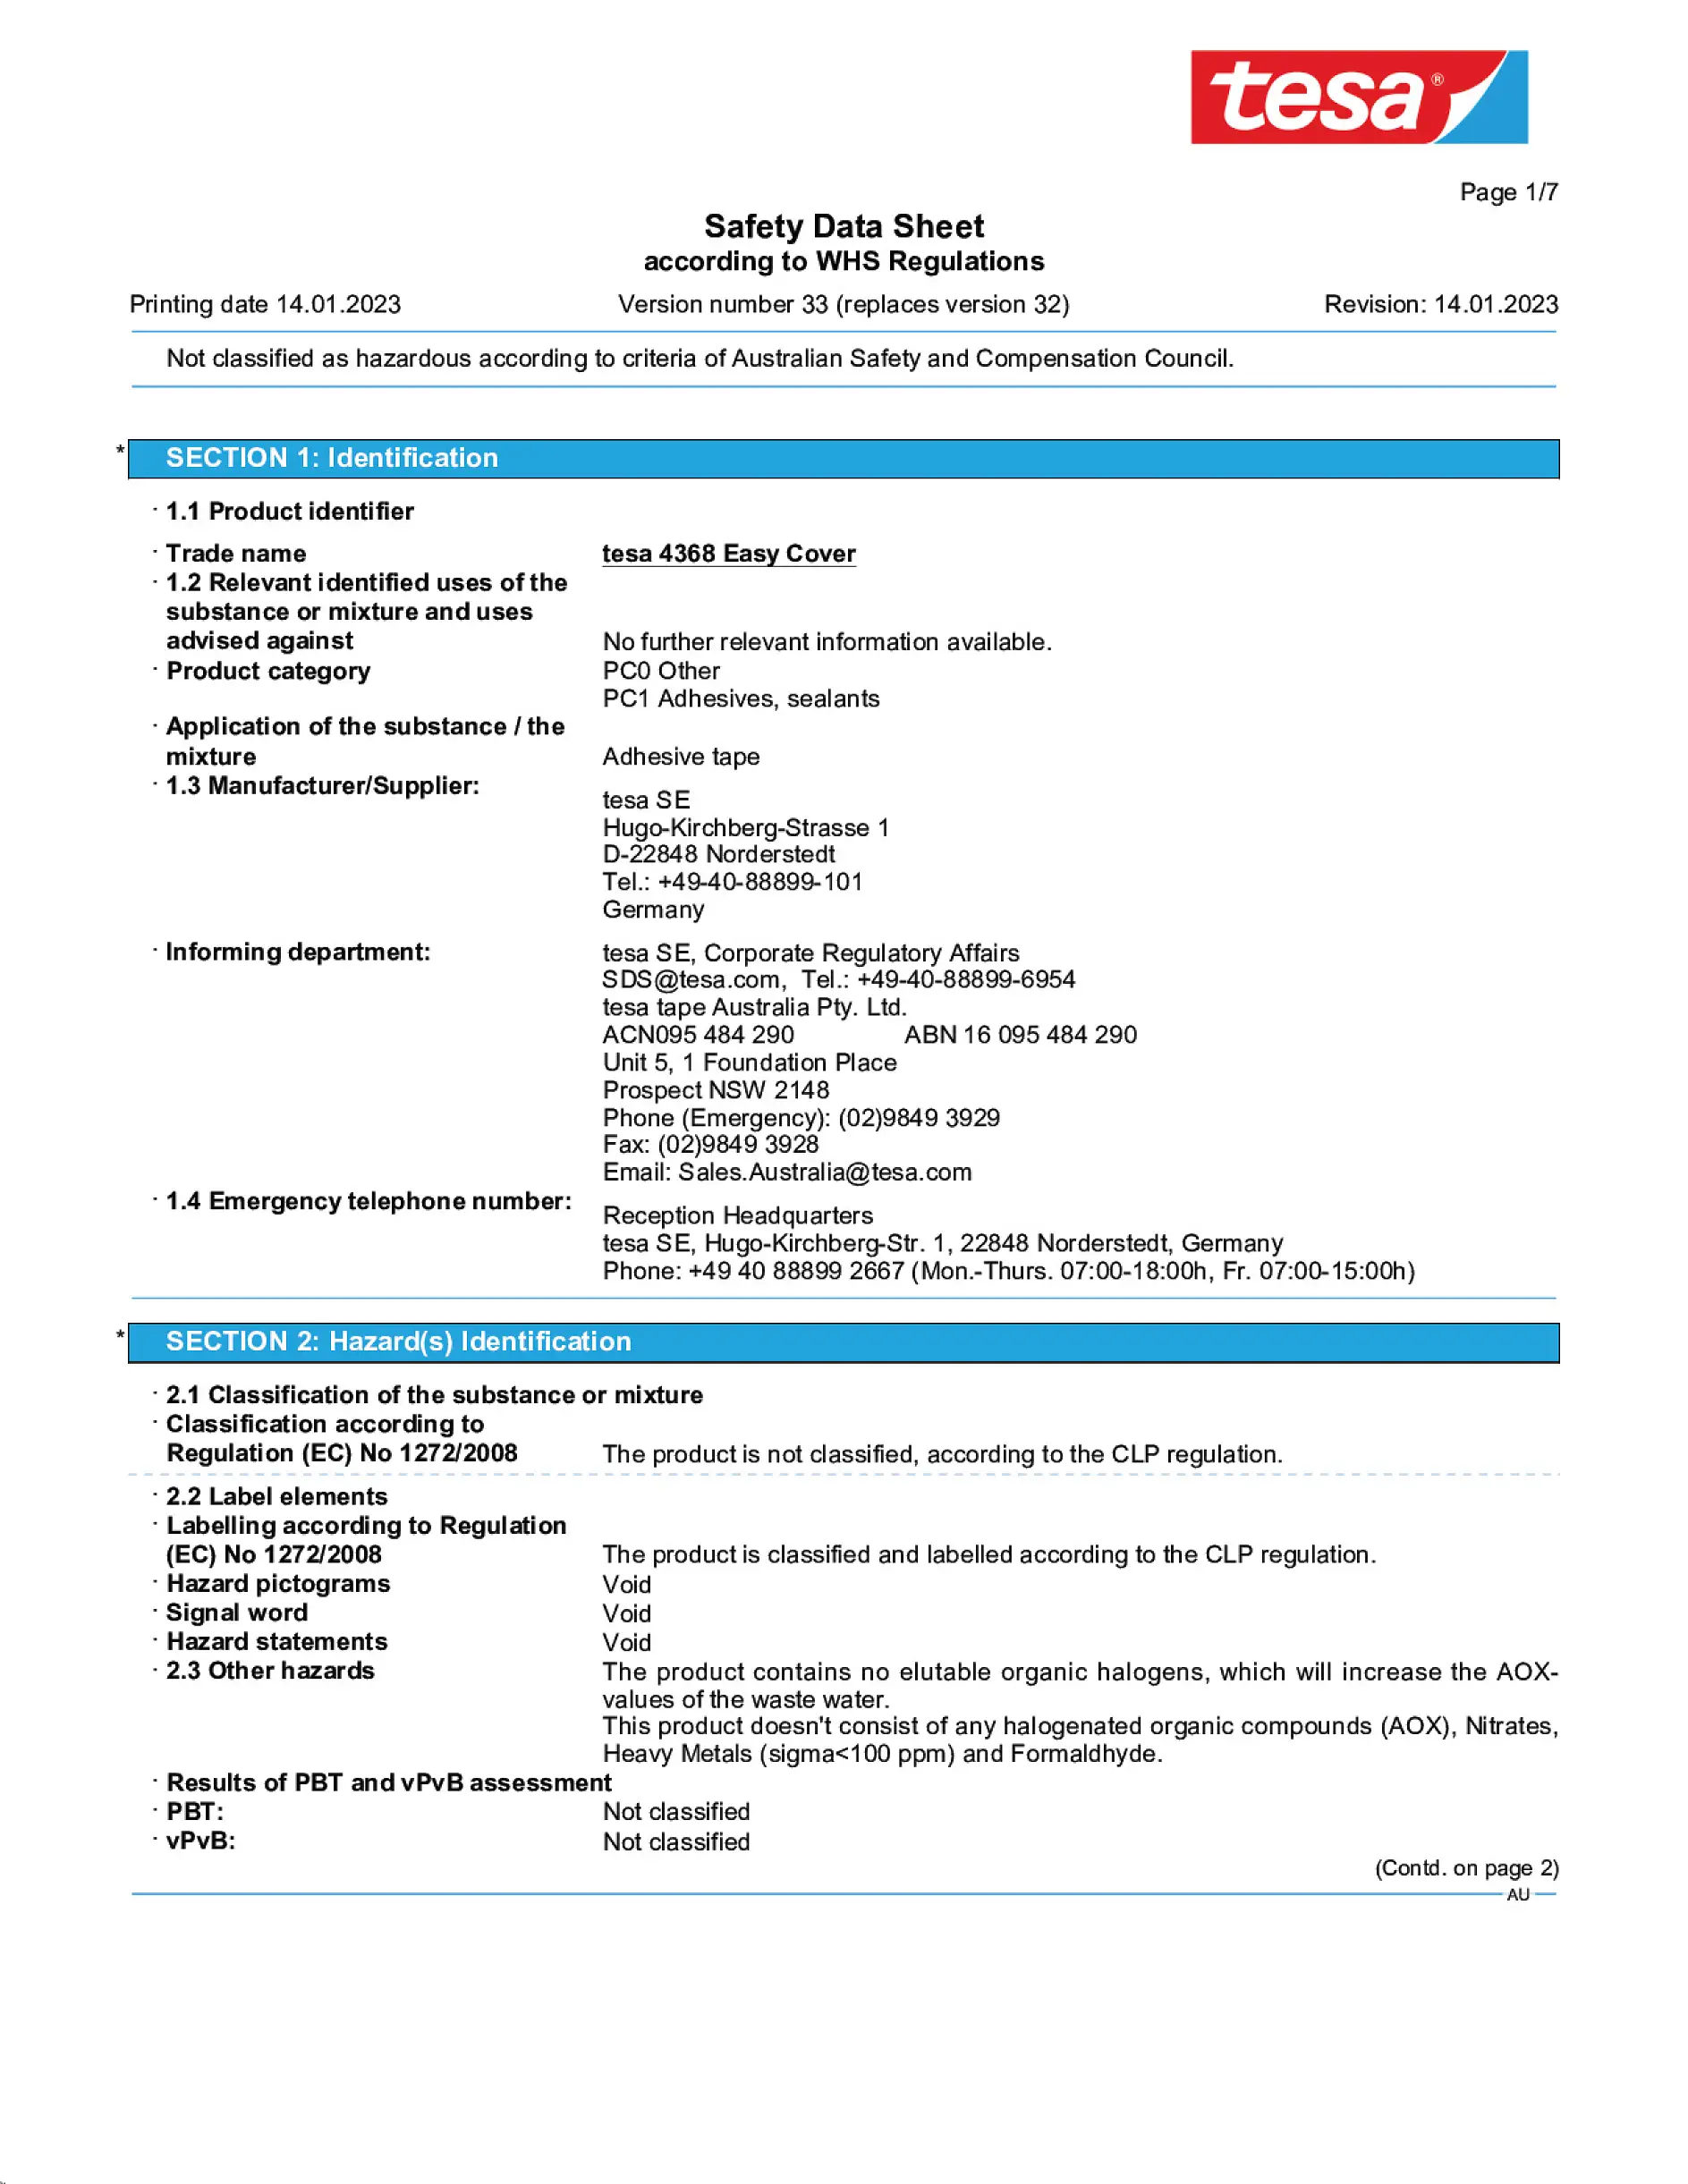 Safety data sheet_tesa® Professional 04368_en-AU_v33